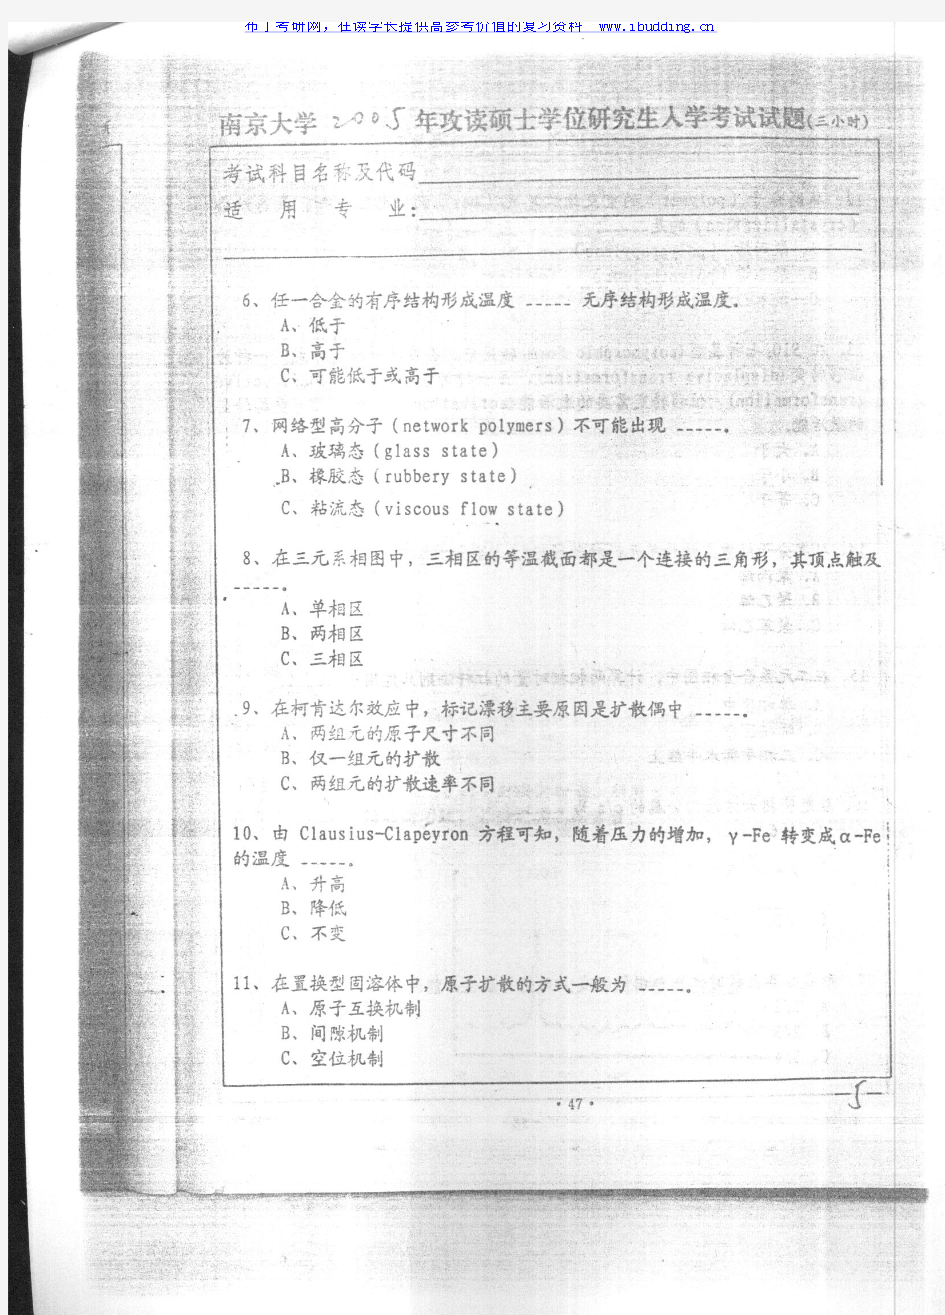 南京大学 2005年材料物理基础(B) 考研真题及答案